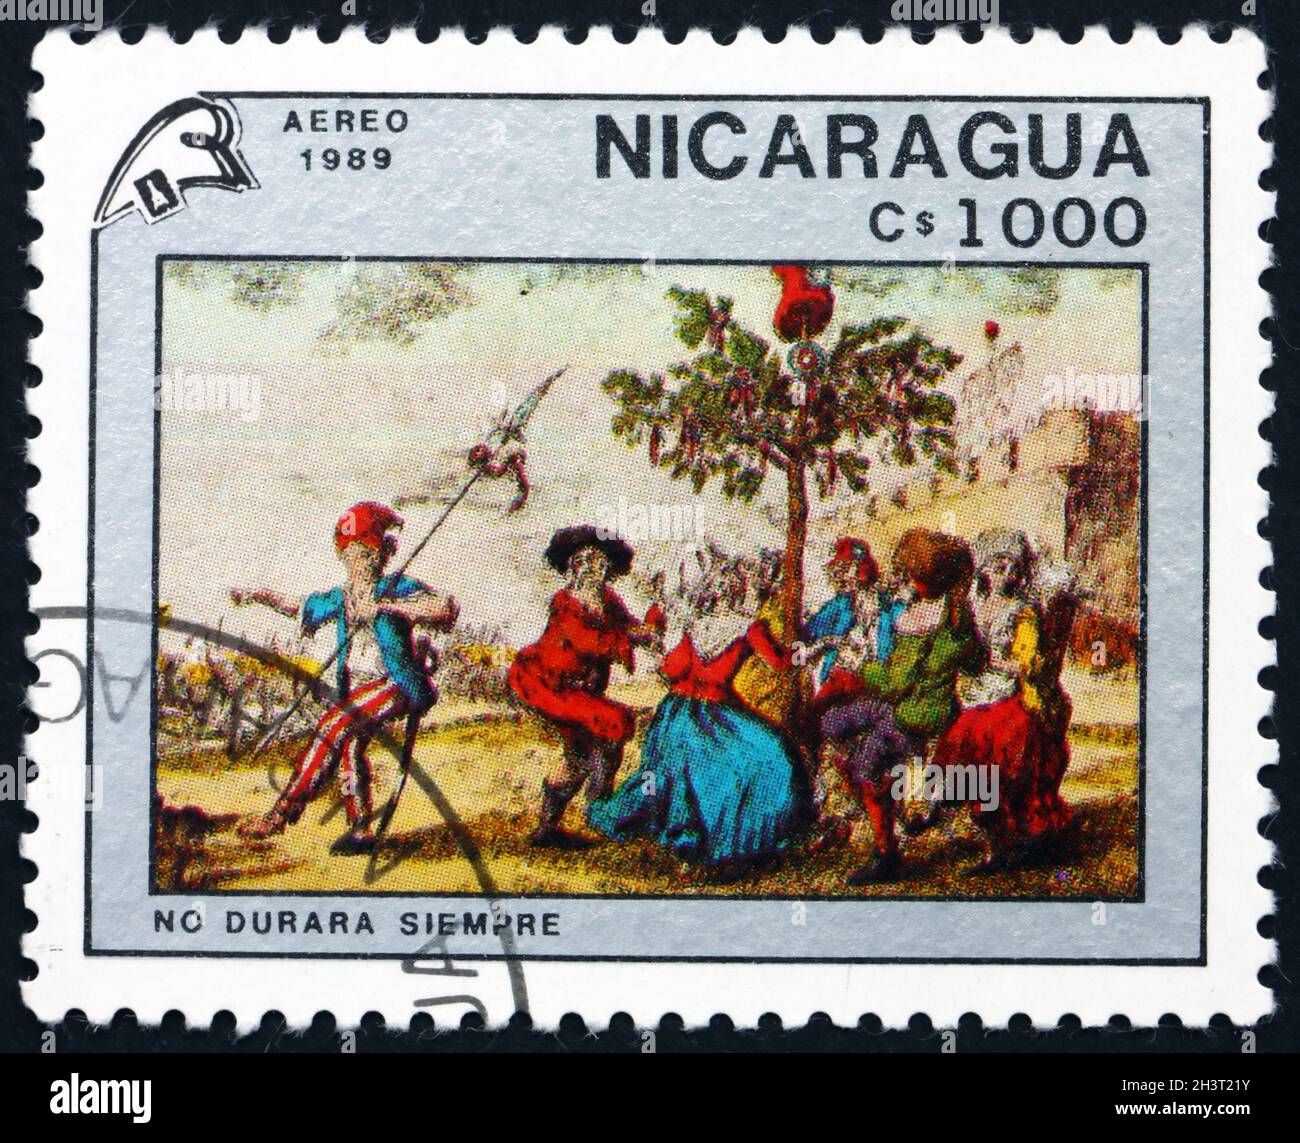 NICARAGUA - UM 1989: Eine in Nicaragua gedruckte Briefmarke zeigt Tanz um den Freiheitsbaum, Französische Revolution, Zweihundertjahrfeier, um 1989 Stockfoto